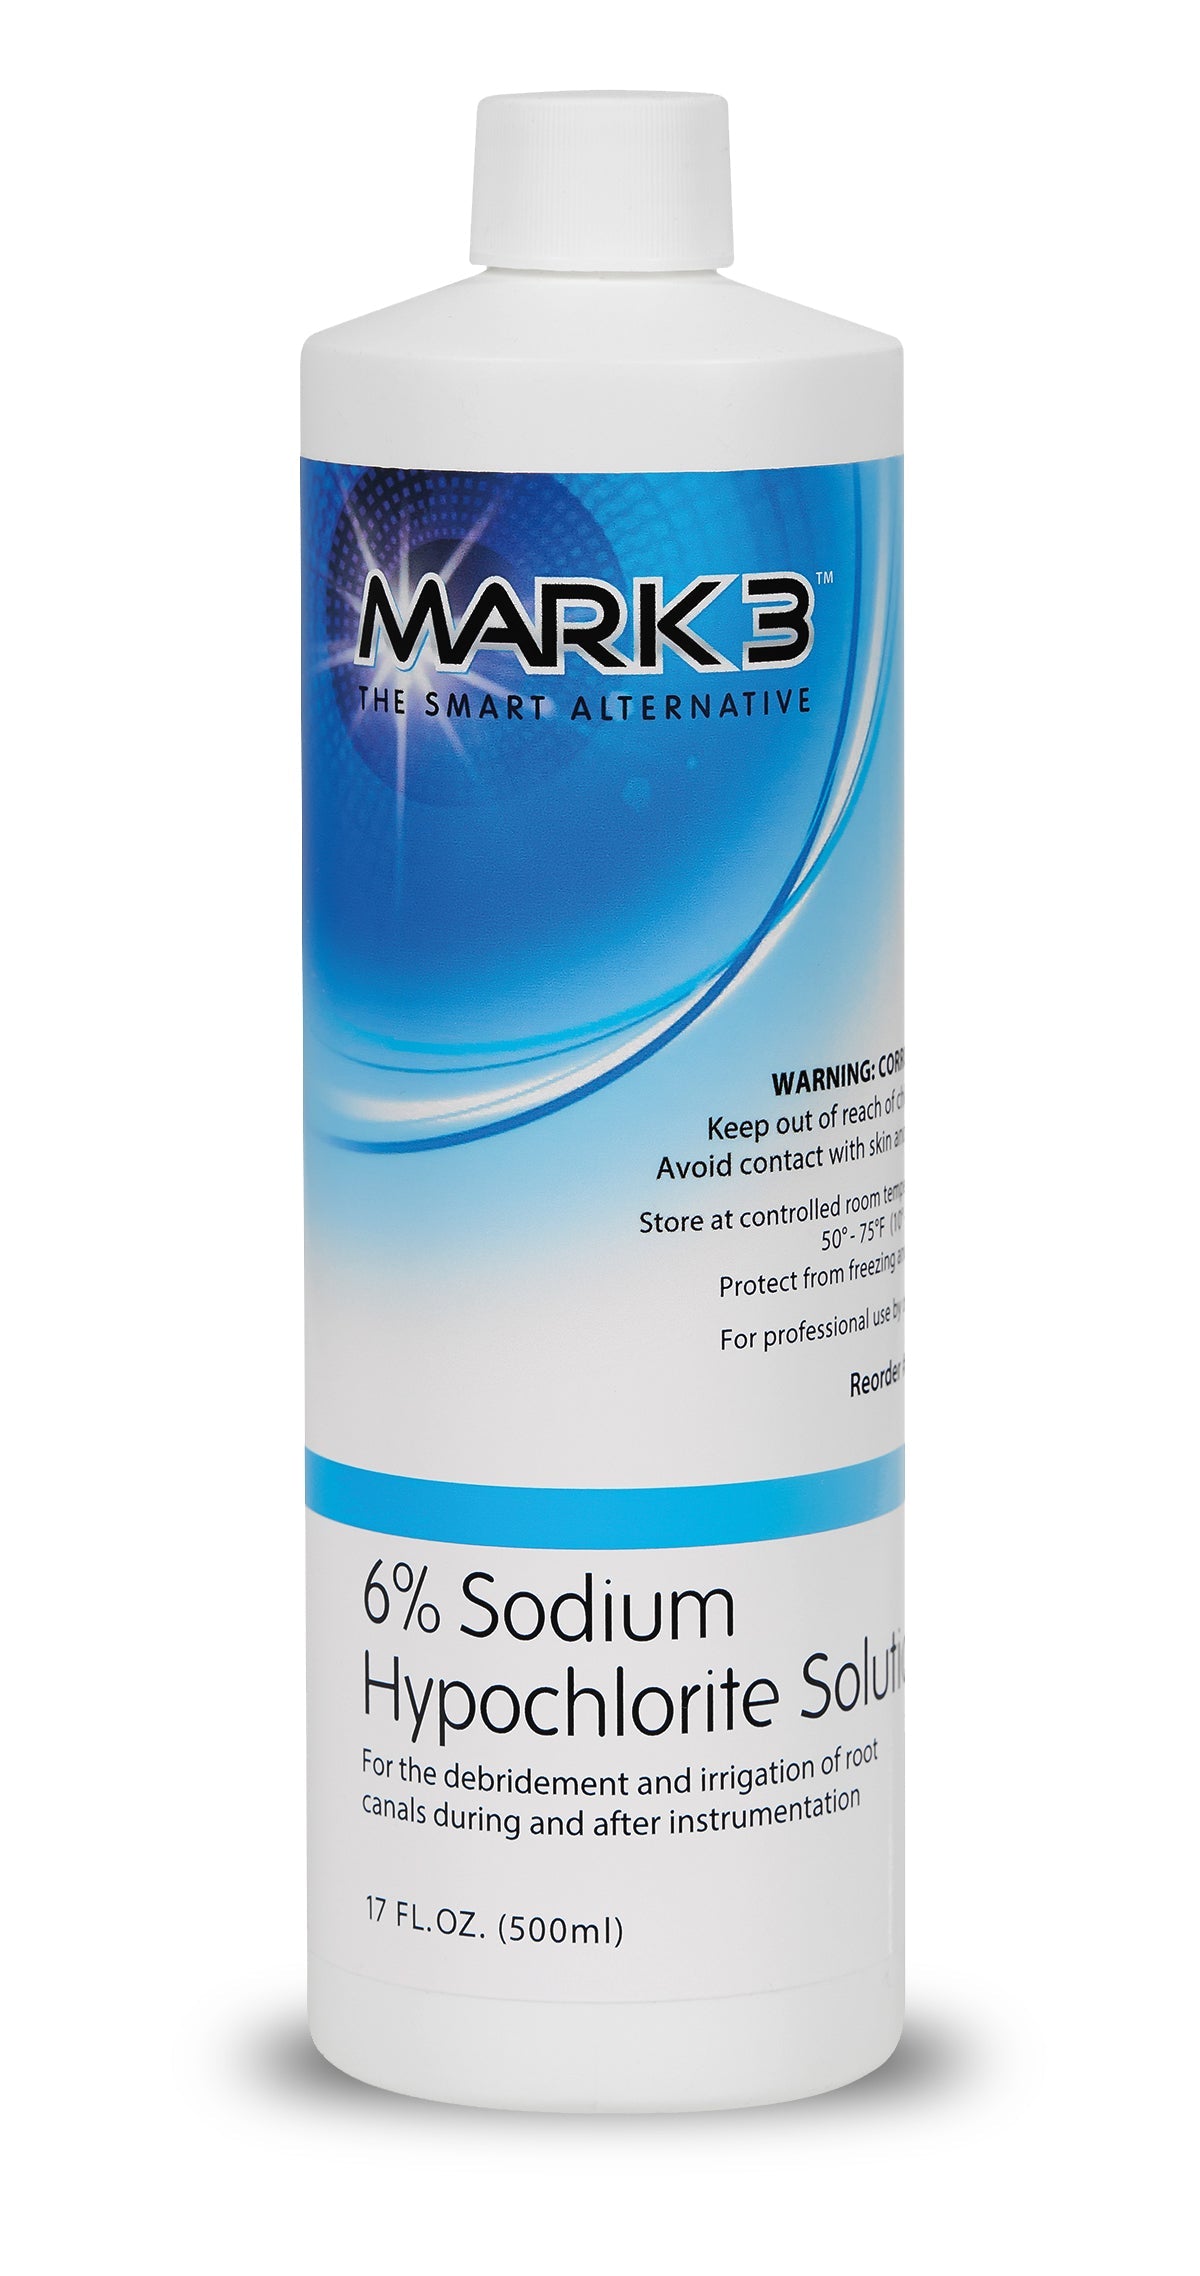 Sodium Hypochlorite Solution 6% 17oz. Bottle - MARK3